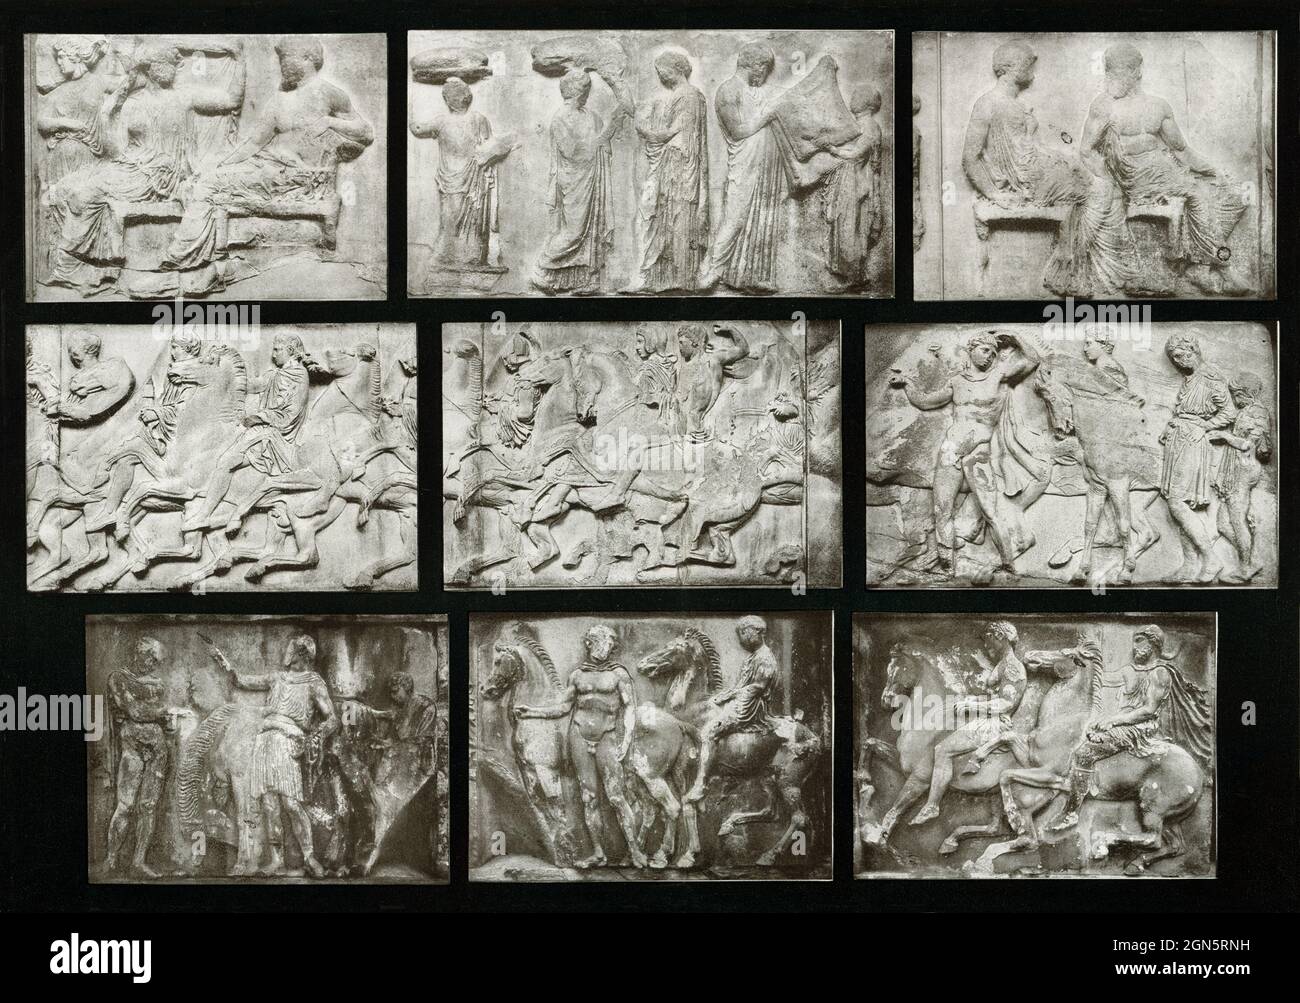 Cette photo de 1910 montre des reliefs de la frise de Partheno sur l'Acropole d'Athènes. Ce sont des scènes du pageant qui représentent et illustrent les jours du Festival panathénaïque. Situé sur l'Acropole athénienne, le Parthénon a été le point culminant de l'architecture grecque et a été plus somptueusement décoré que n'importe quel temple grec avant elle. Phidias a été le principal décorateur de la sculpture du temple, et chacun des quatre-vingt-dix-deux metopes doriques avait des scènes sculpturales de relief, ainsi que chaque pouce de la frise ionique de 424 pieds de long. Les pediments ont été remplis de dizaines de plus-que-vie si Banque D'Images